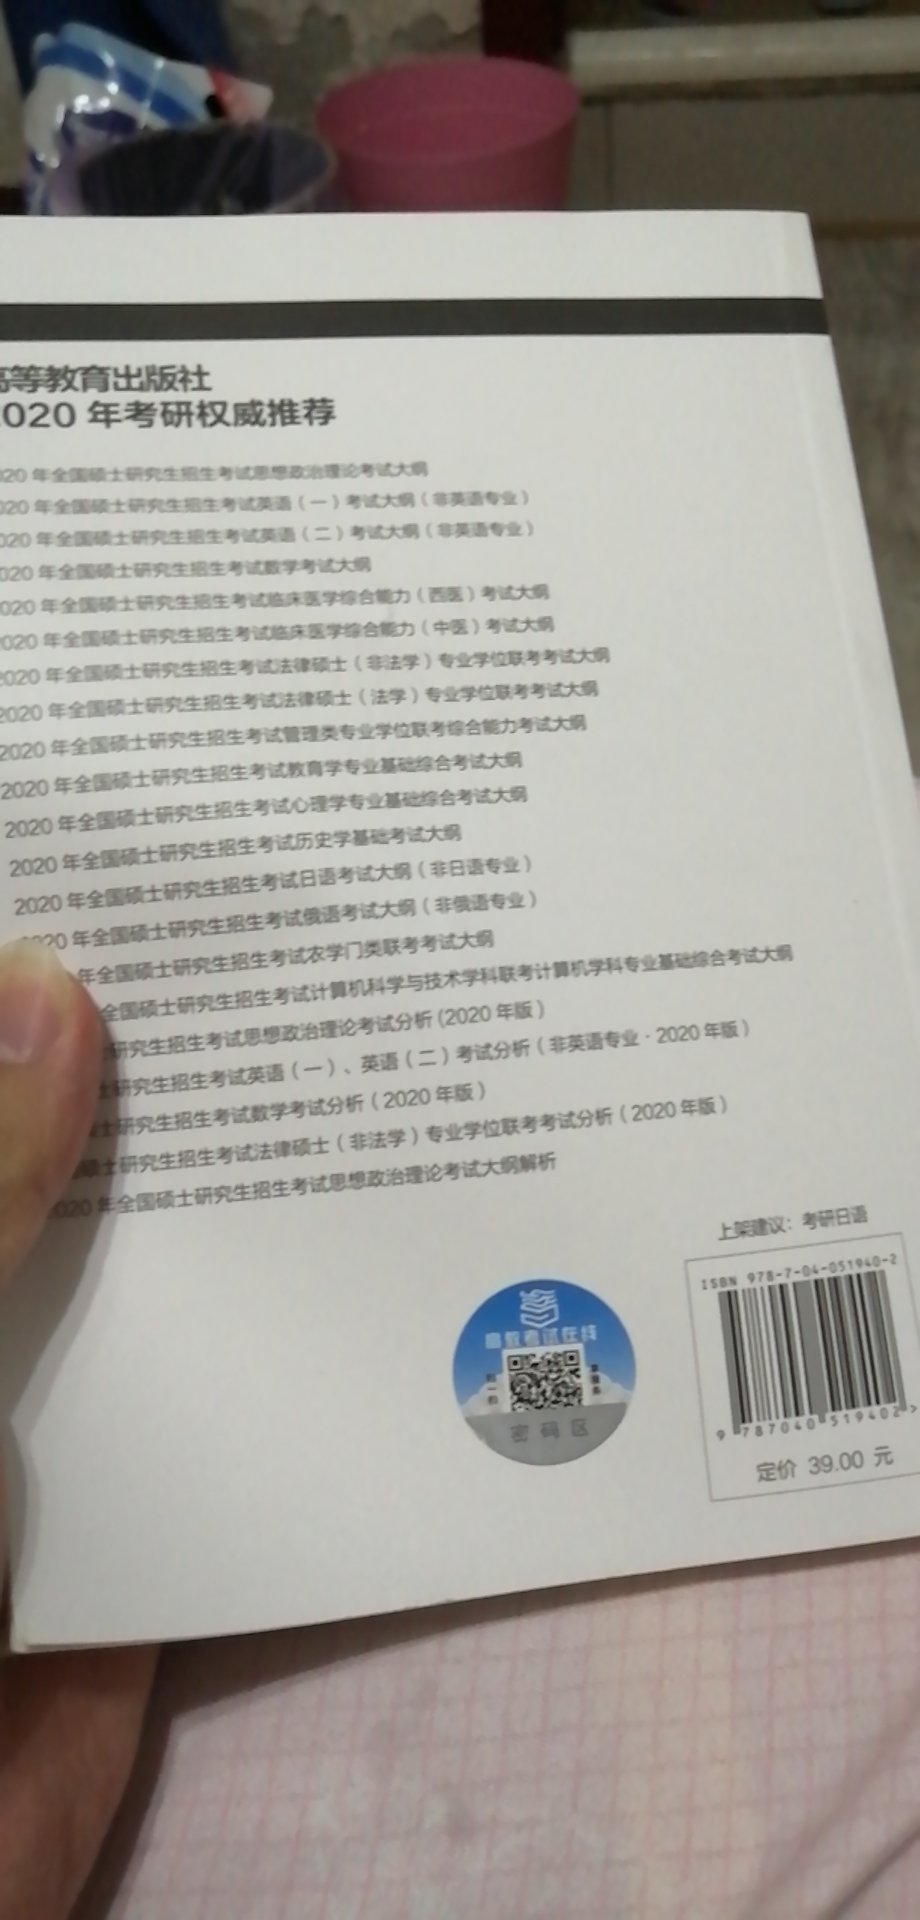 这本书如图。203公共日语的相关用书很少，到现在还没买到什么特别好的。这本是高教社出的，是比较官方的用书。内容比较少，不能光靠这个复习，不过作为一个参考还是不错的。有真题和词汇等等几部分，是2020最新版。物流很快，送货上门。